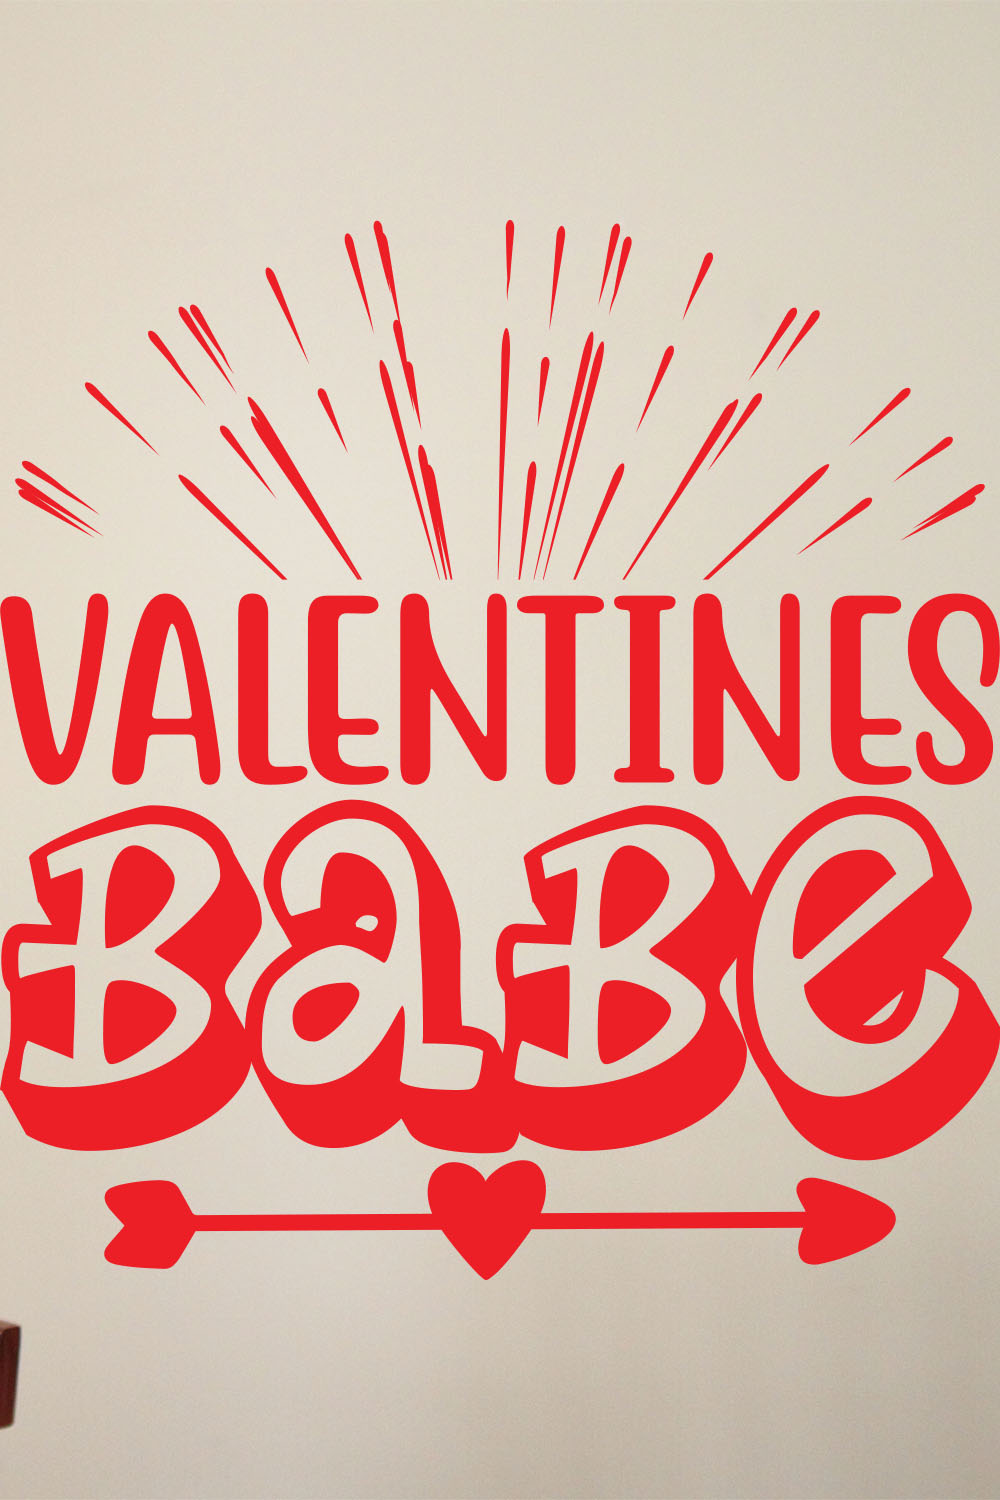 Valentine Day SVG Design Bundle pinterest preview image.